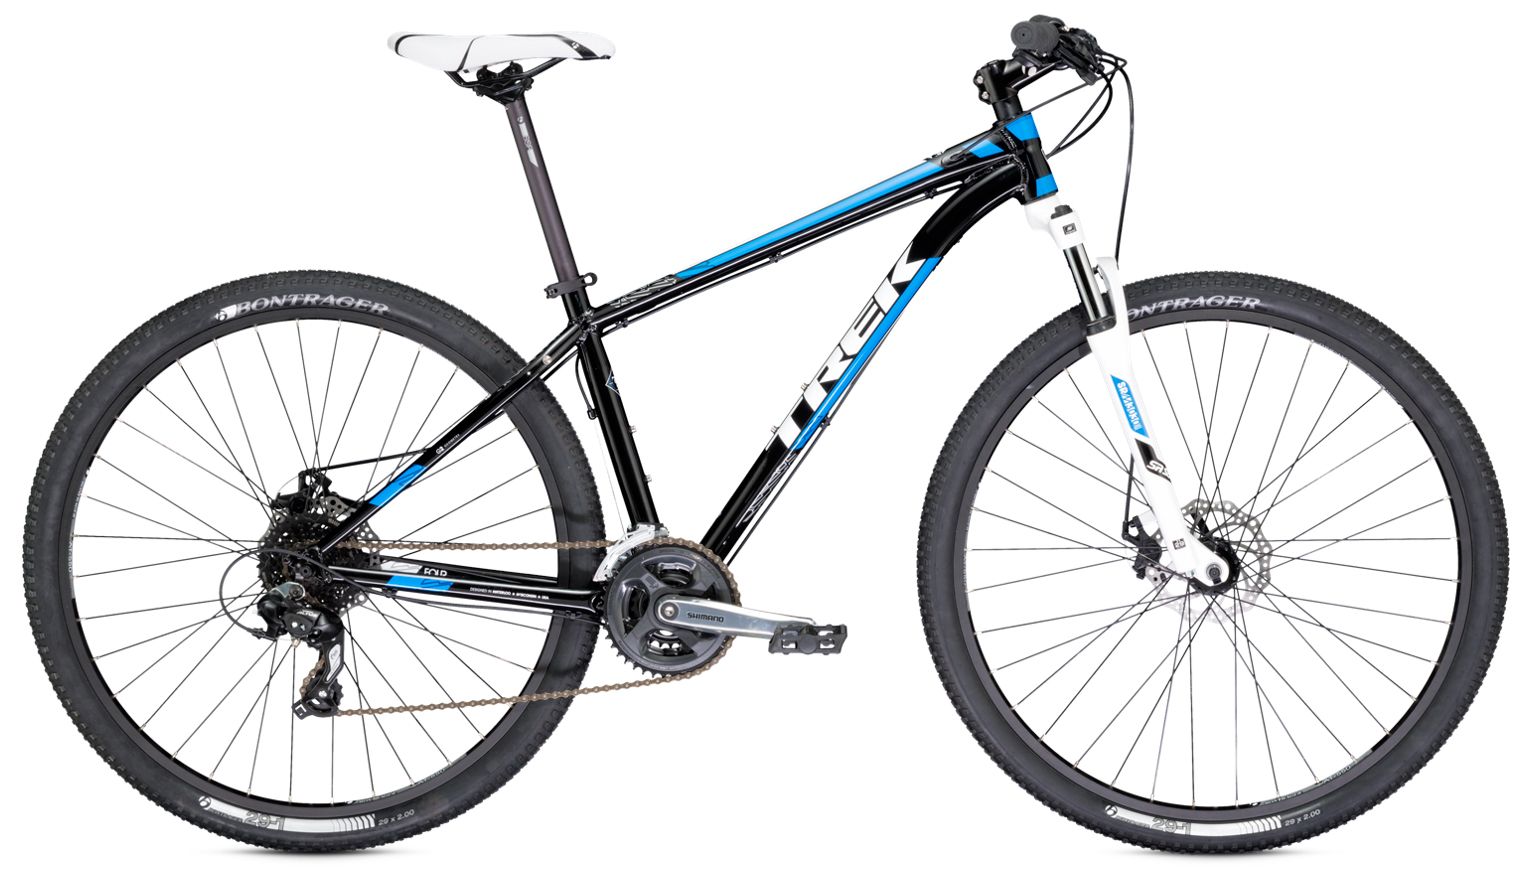  Отзывы о Горном велосипеде Trek X-Caliber 4 2013